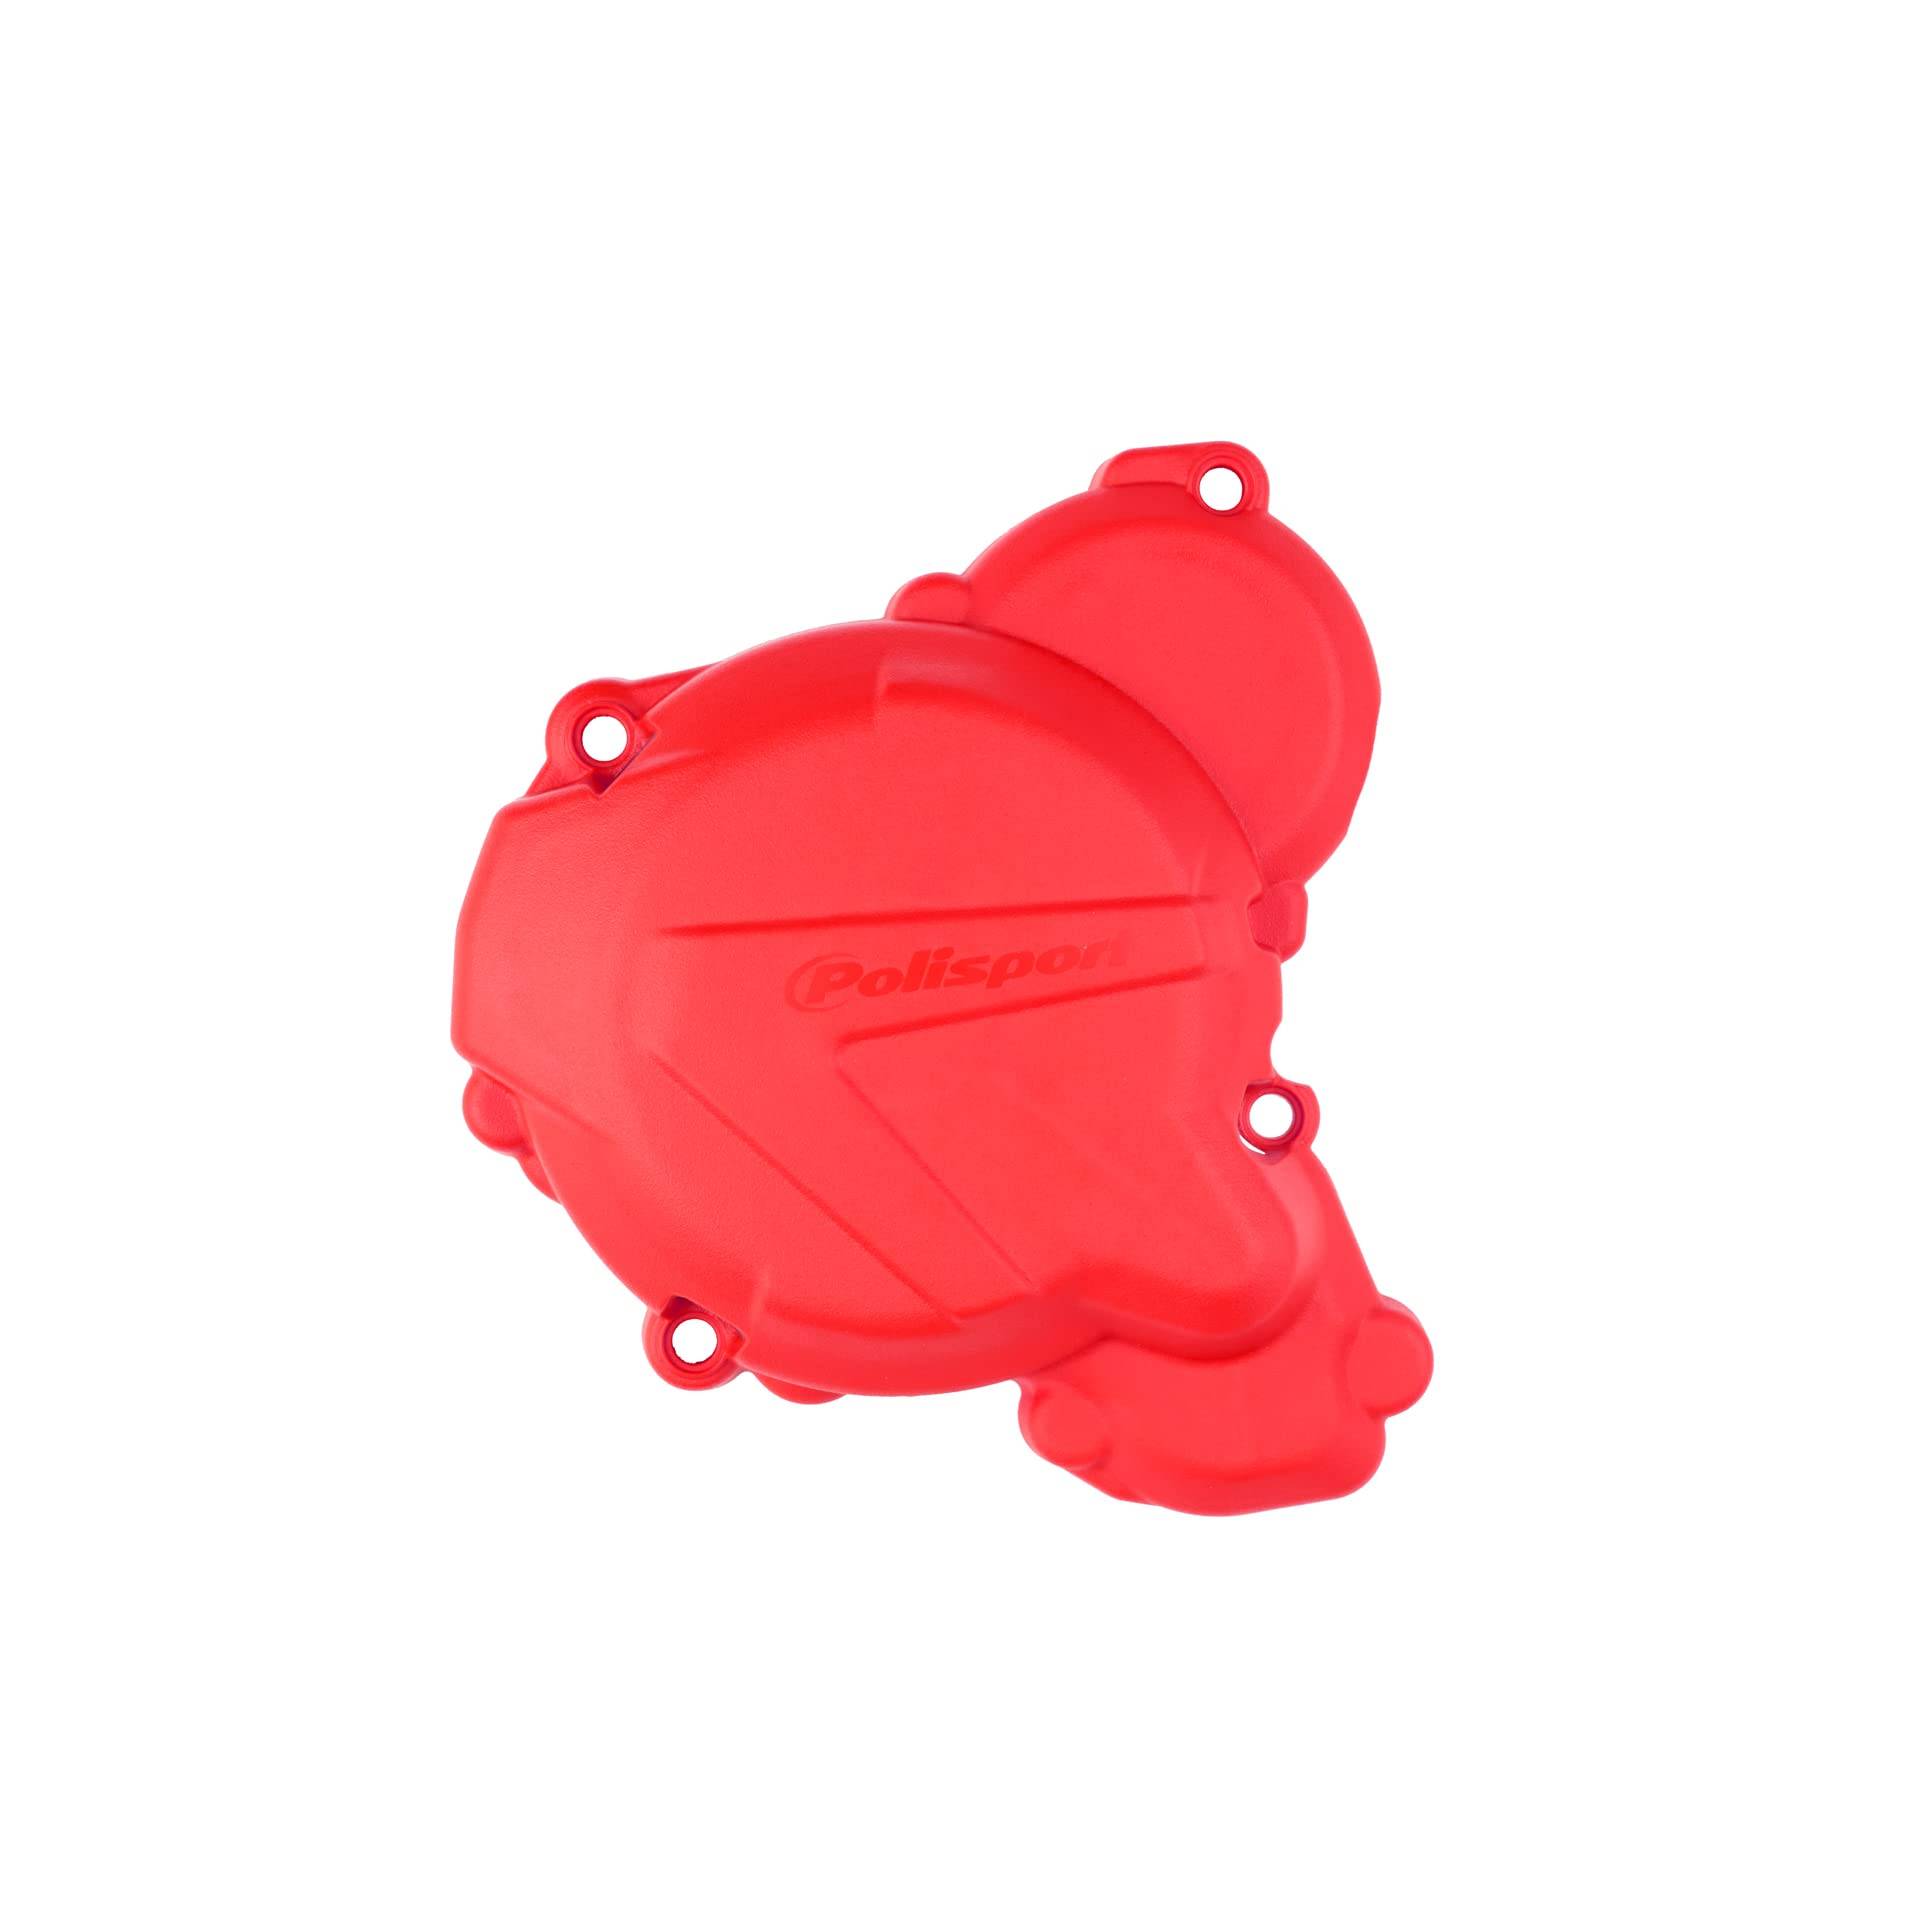 POLISPORT 8467500005 - Zünddeckelschutz aus schlag- und abriebfestem Polyamid kompatibel mit Motorrädern GAS GAS in Farbe rot von Polisport